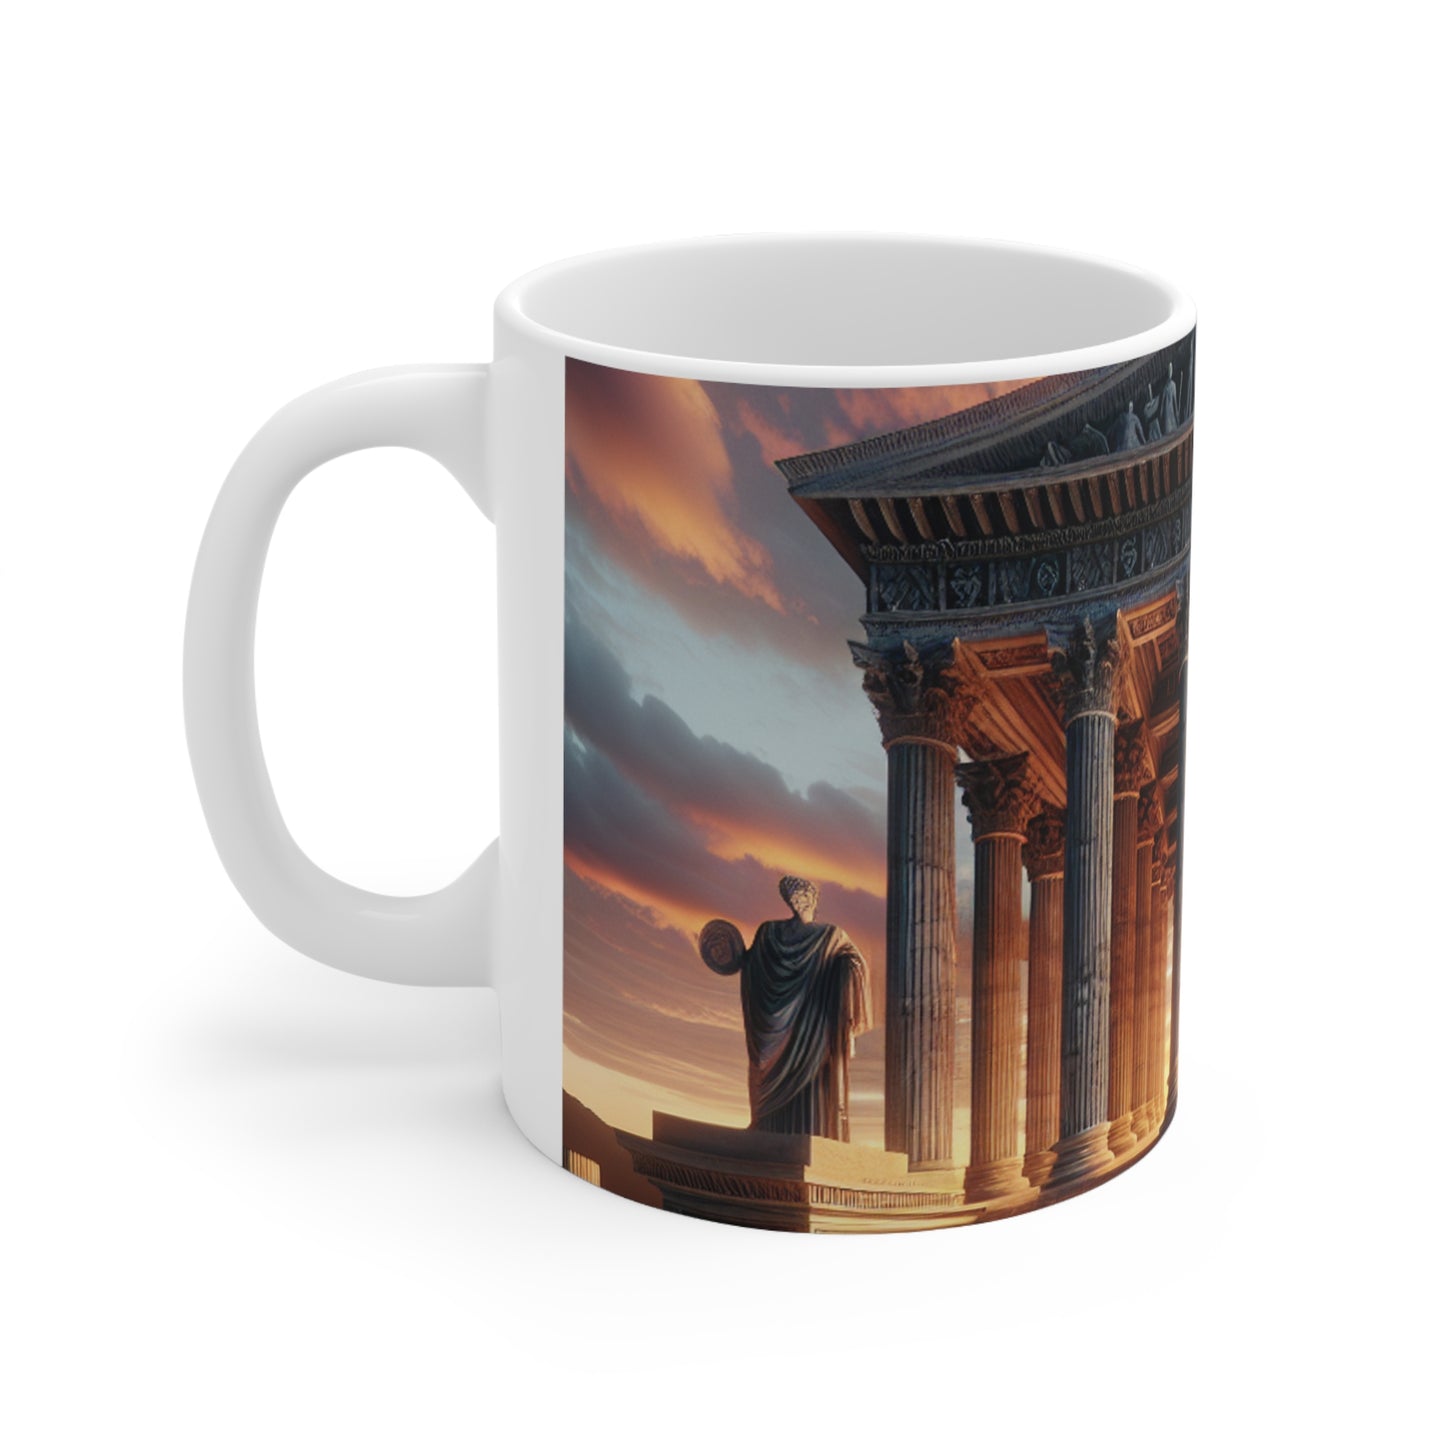 "Cálido resplandor del templo griego" - La taza de cerámica alienígena estilo neoclasicismo de 11 oz